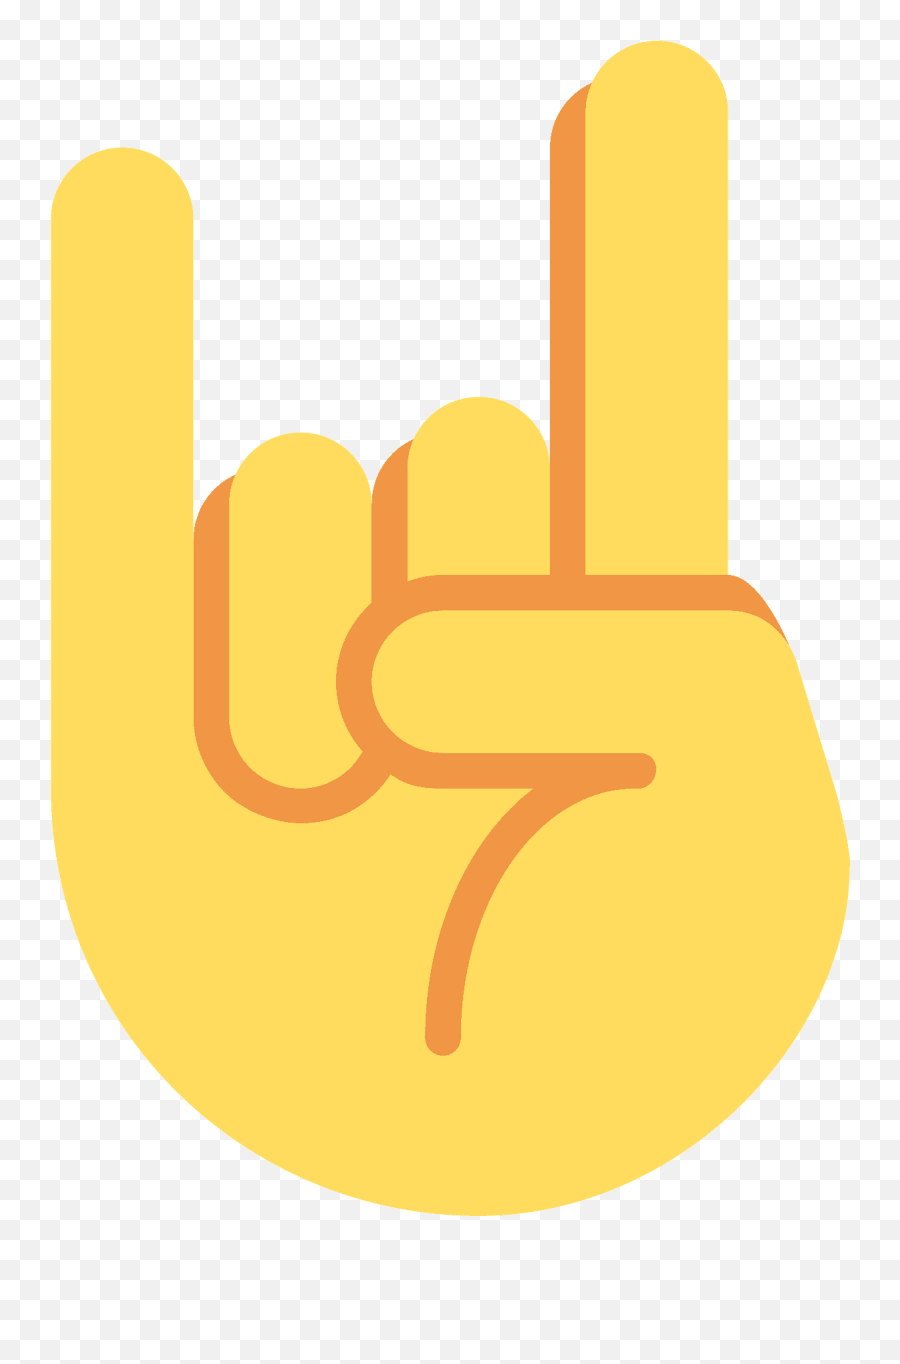 Sign Of The Horns Emoji Clipart - Signo Del Colo Colo Con La Mano,Emoticon For Fingers Crossed On Iphone